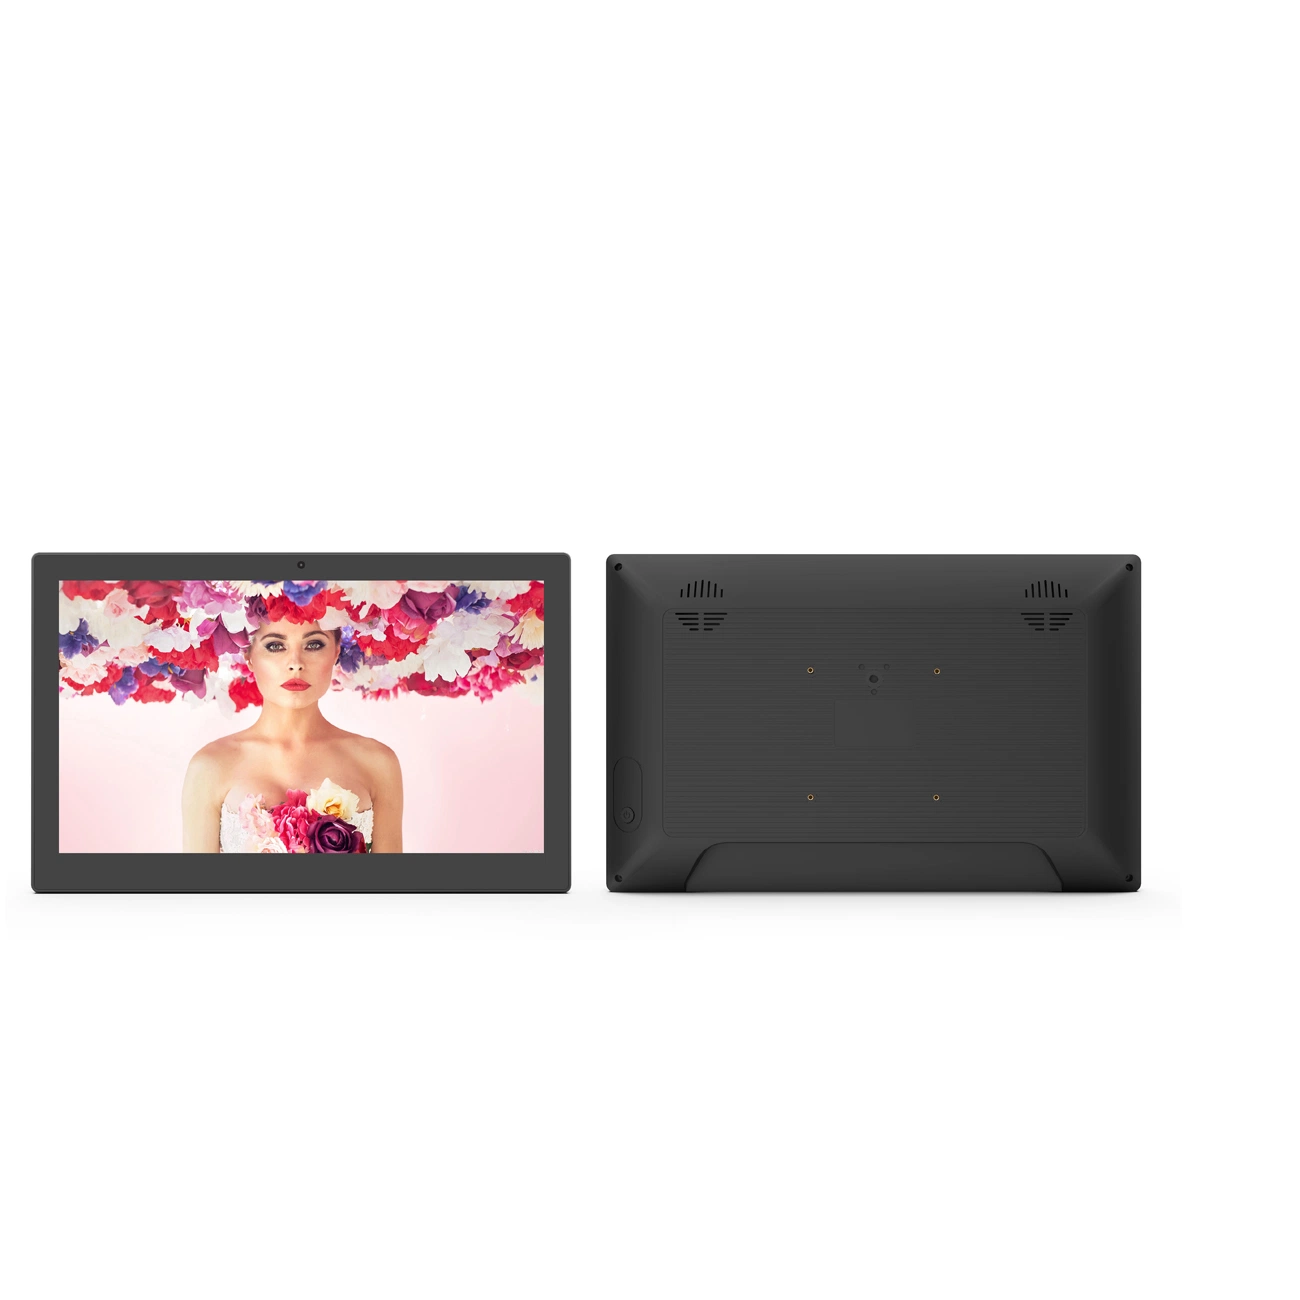 Vente en gros 13.3/15.6 pouces mural capacitif écran tactile WiFi RJ45 Panneau LCD carte SD USB signalétique numérique NFC d'intérieur commercial Écran tactile LCD